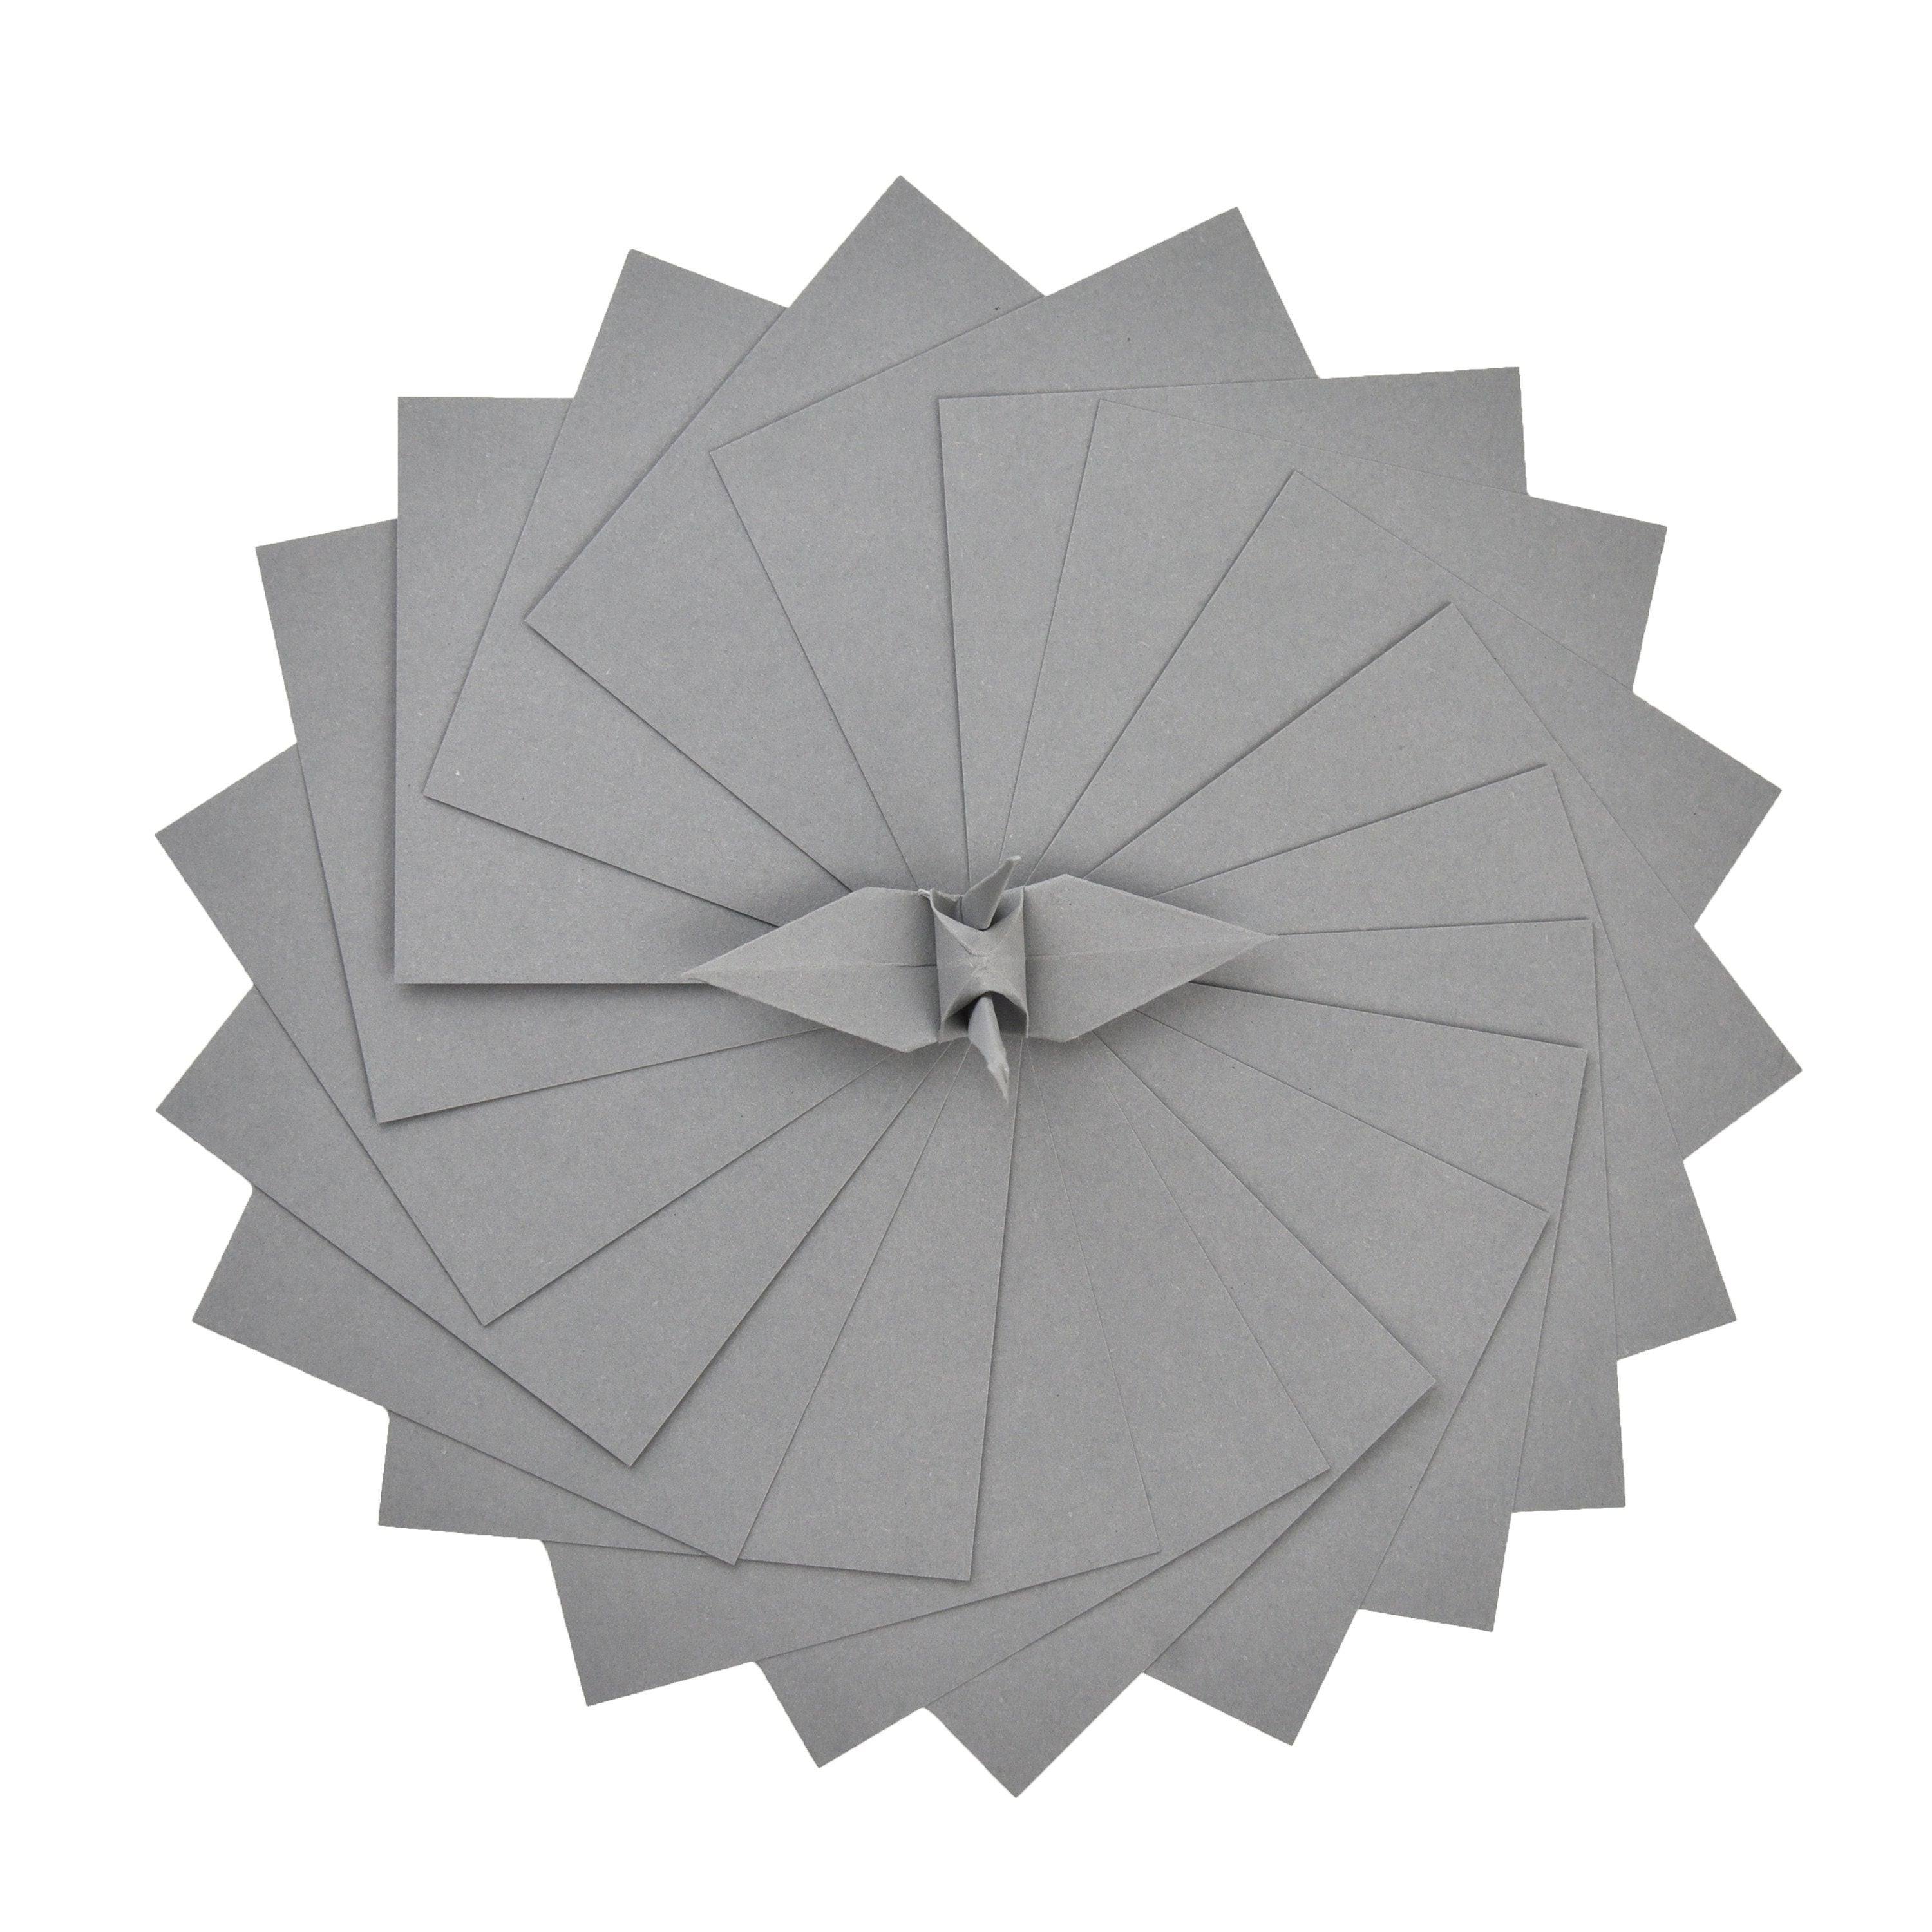 100 fogli di carta origami grigi - 3x3 pollici - Confezione di carta quadrata per piegare, gru origami e decorazioni - S10